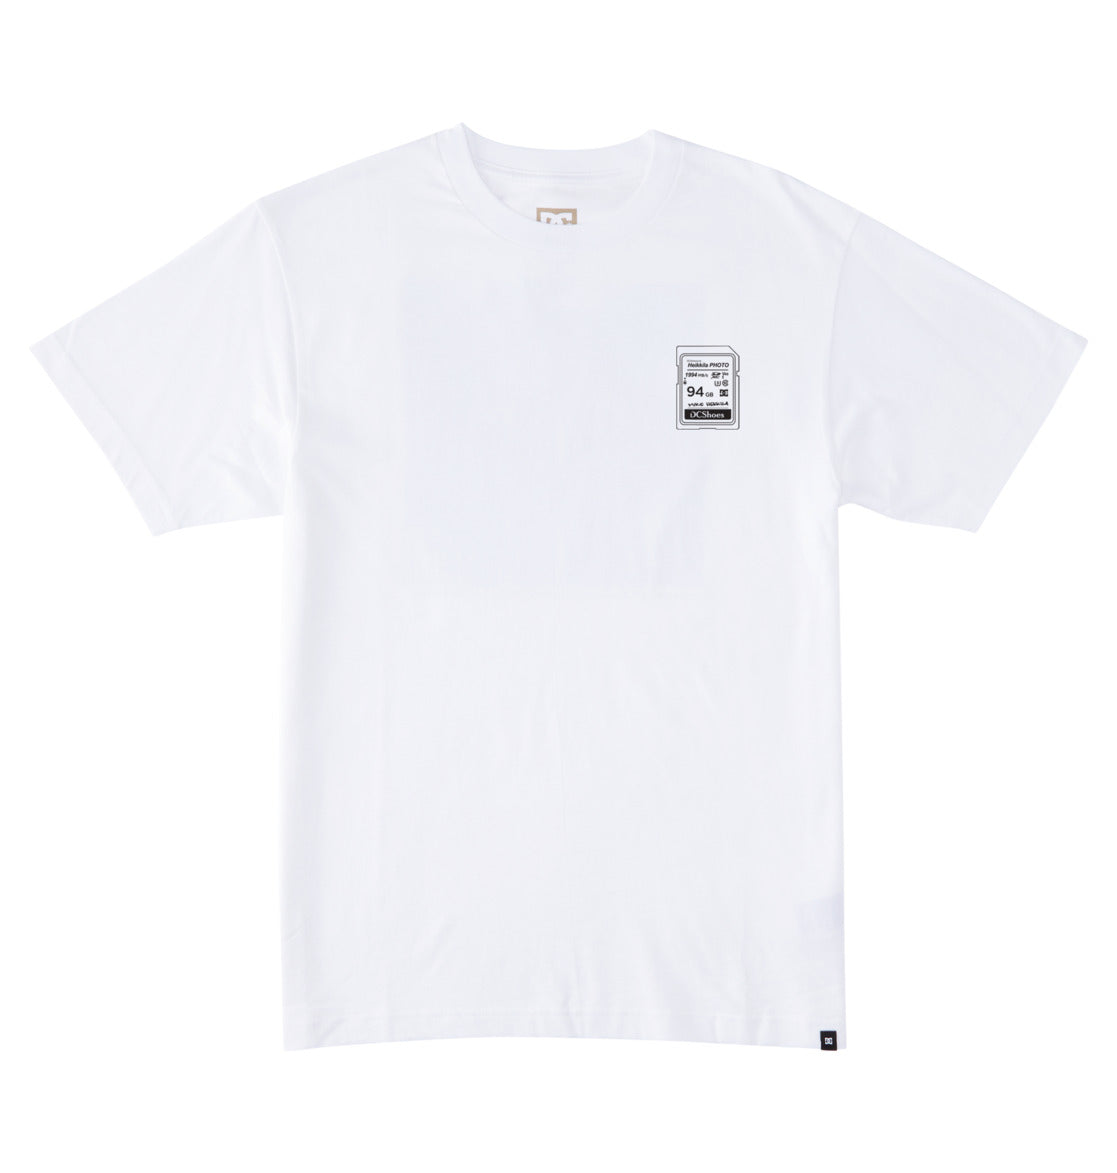 Dcshoes heikkila 360 Flip camiseta blanca